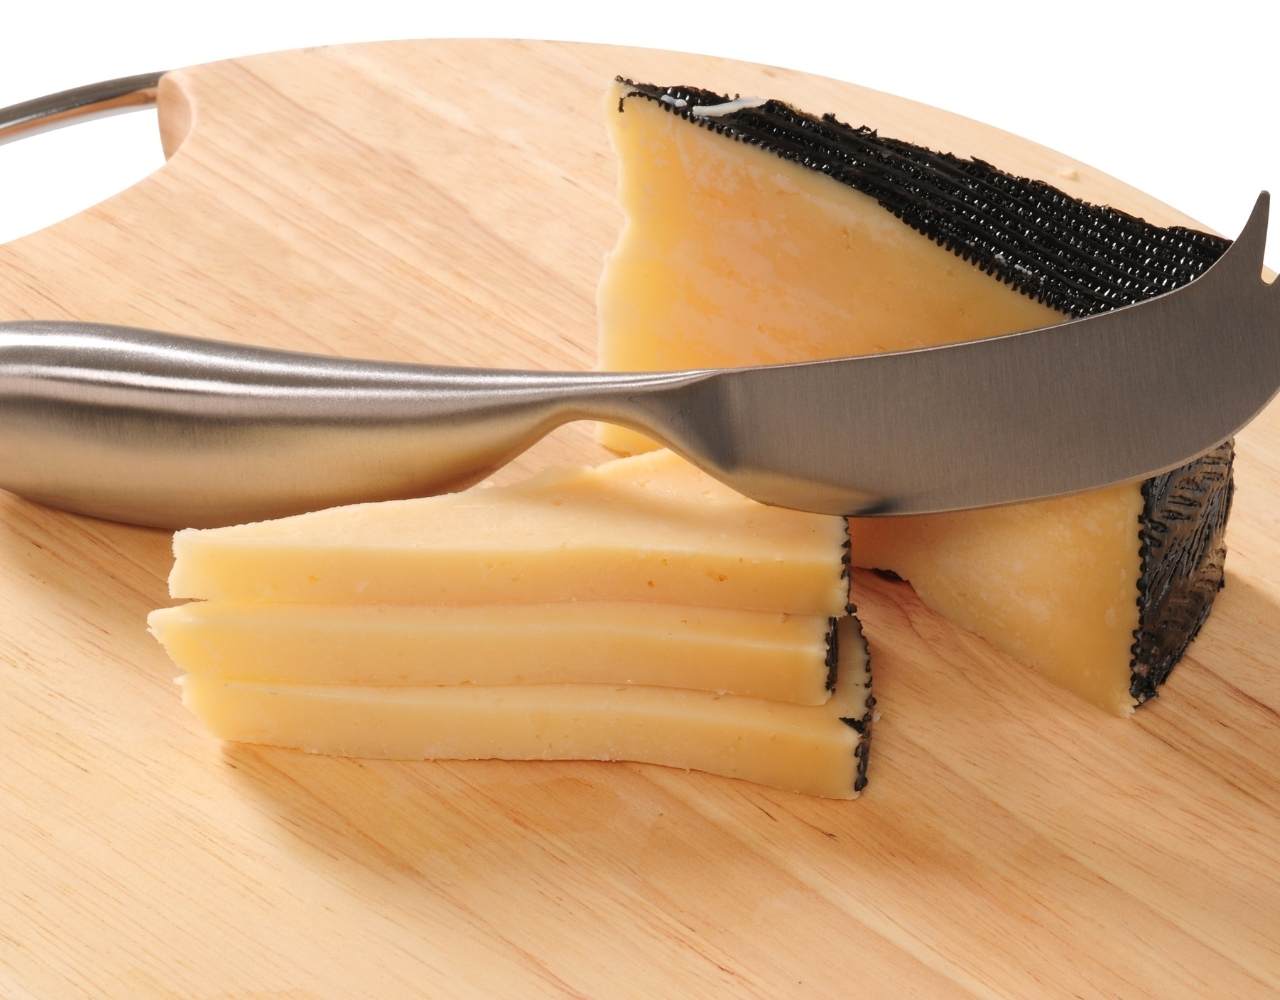 Como conservar el queso manchego y el queso de oveja en general